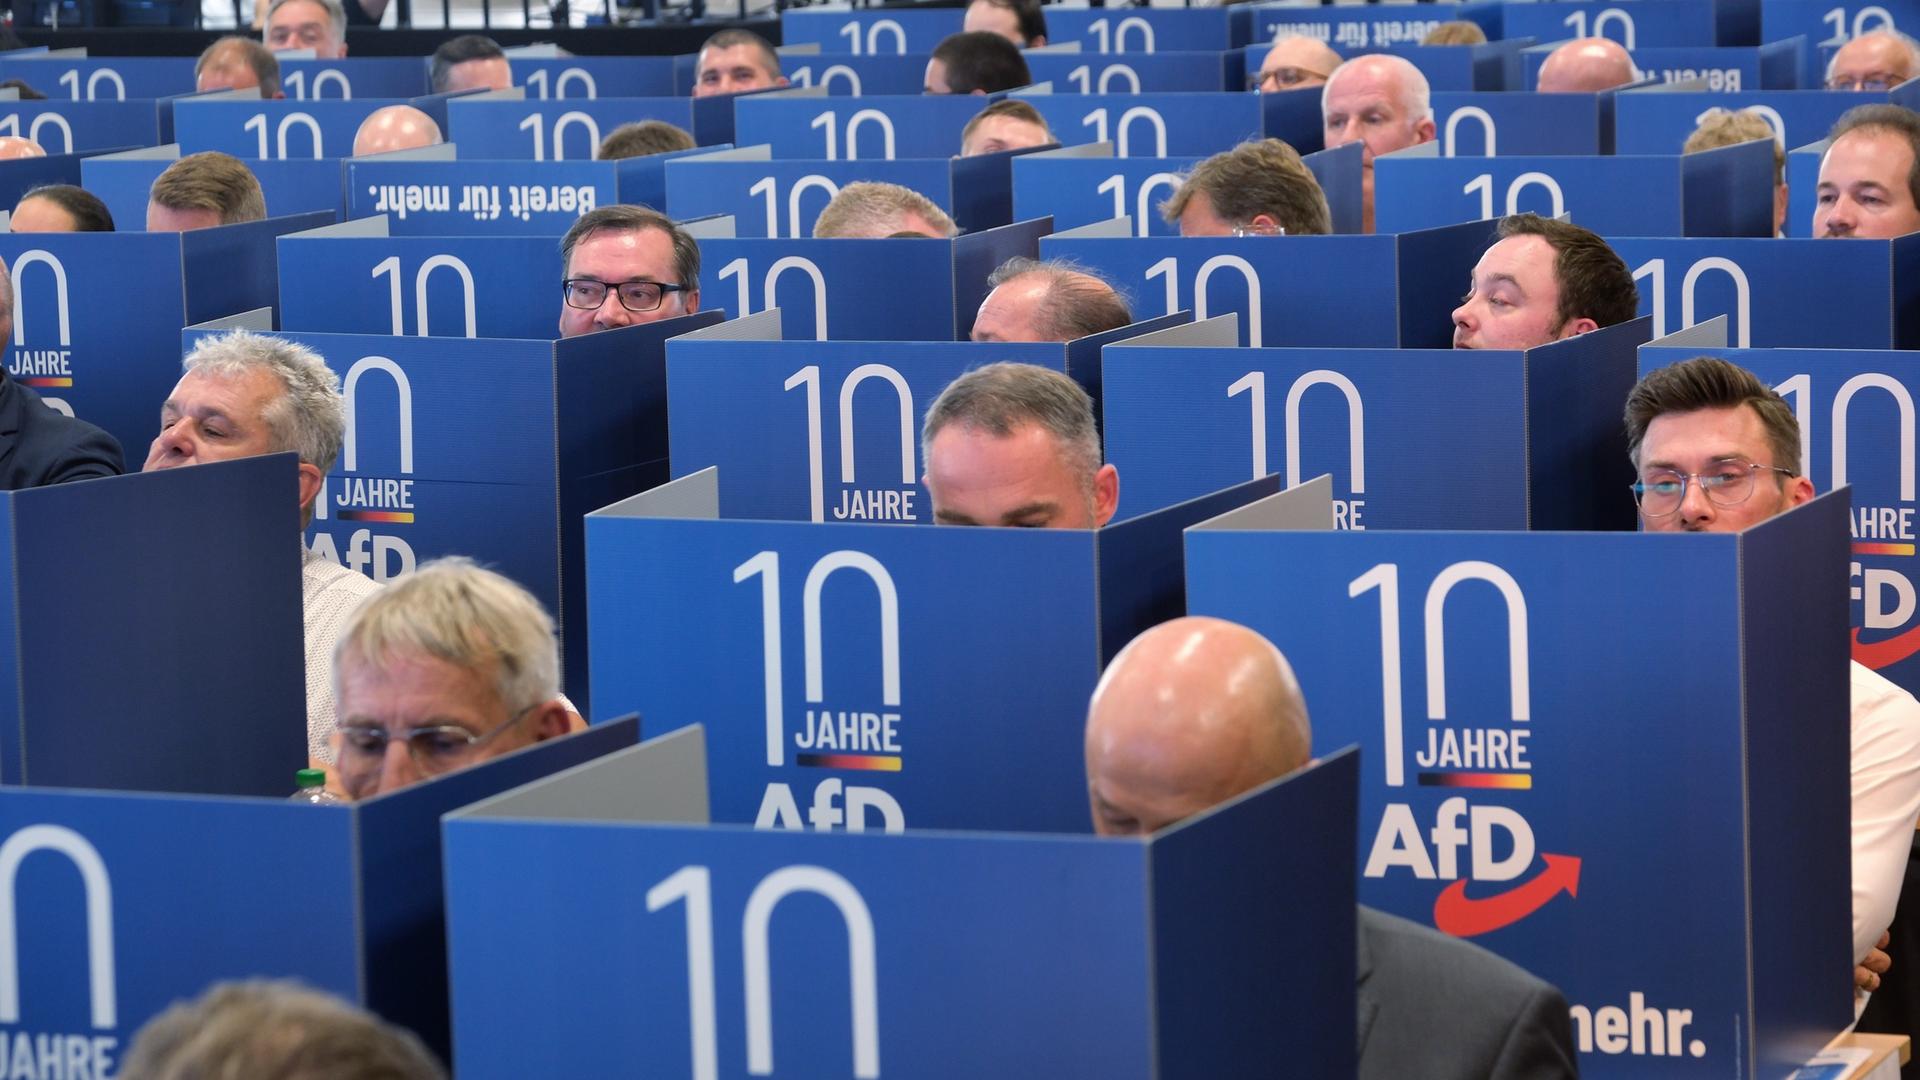 Delegierte geben hinter Wahlkabinen ihre Stimmen für den Listenplätze für die Europawahl der AfD auf der Europawahlversammlung in der Messe Magdeburg ab.